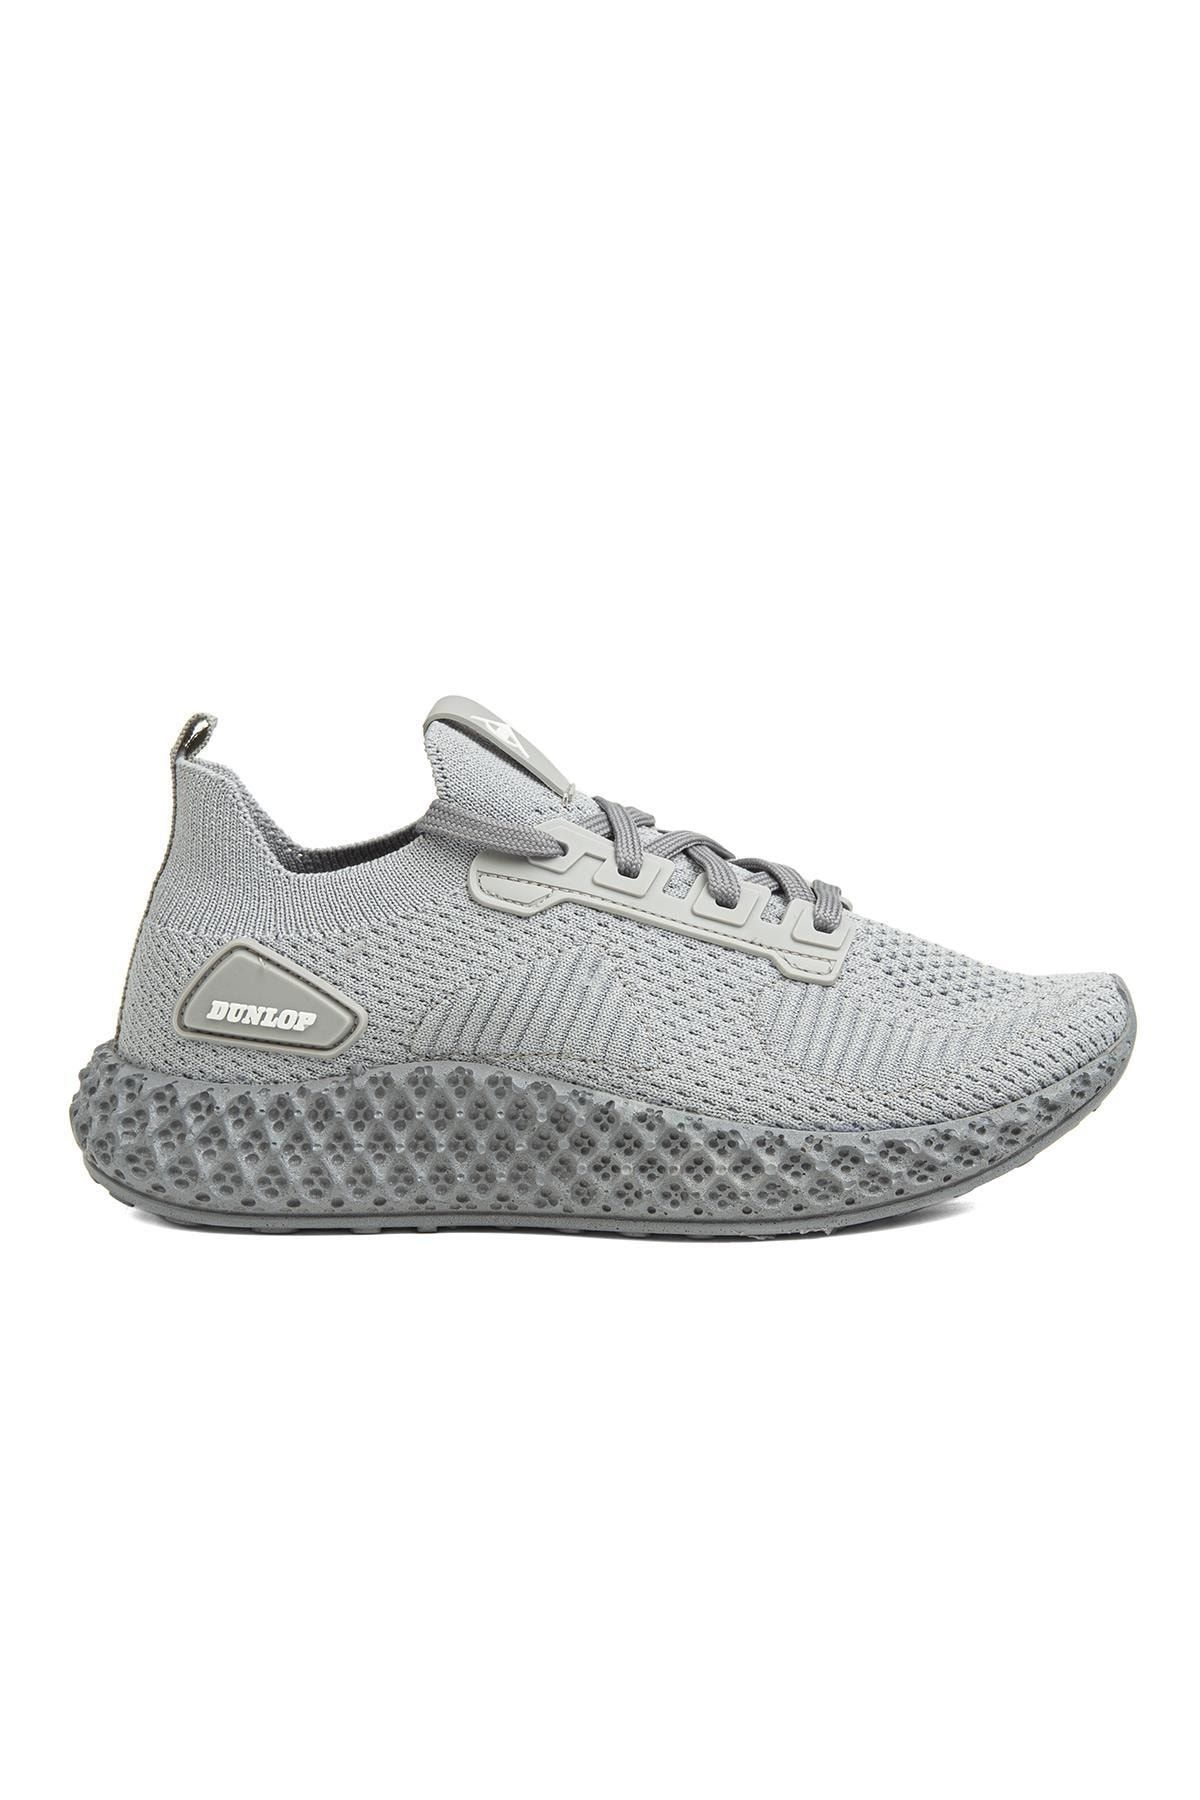 Dunlop ® | Dnp-1862-3482 Gri - Kadın Spor Ayakkabı